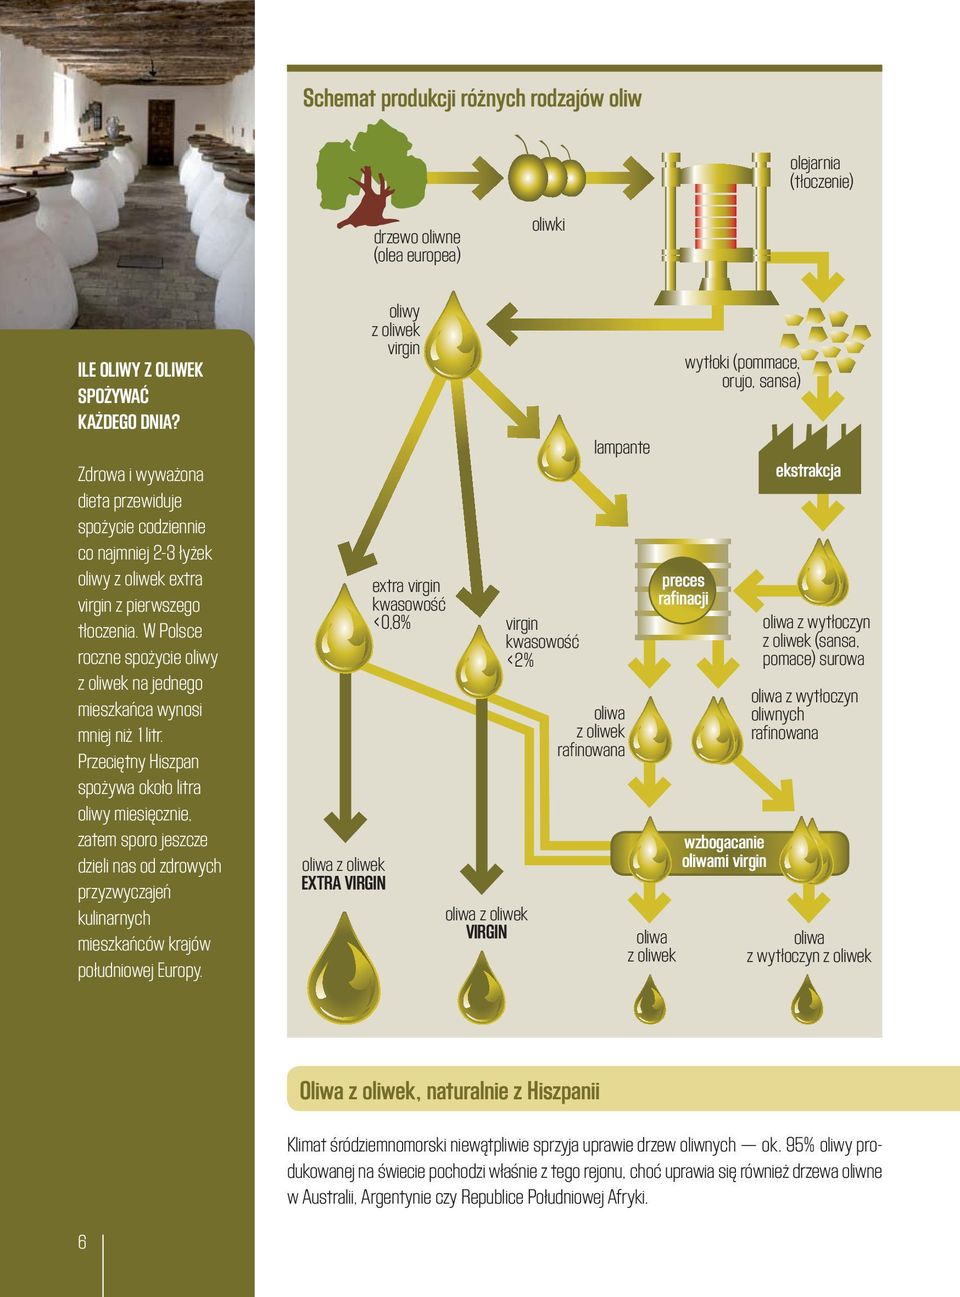 W Polsce roczne spożycie oliwy z oliwek na jednego mieszkańca wynosi mniej niż 1litr.